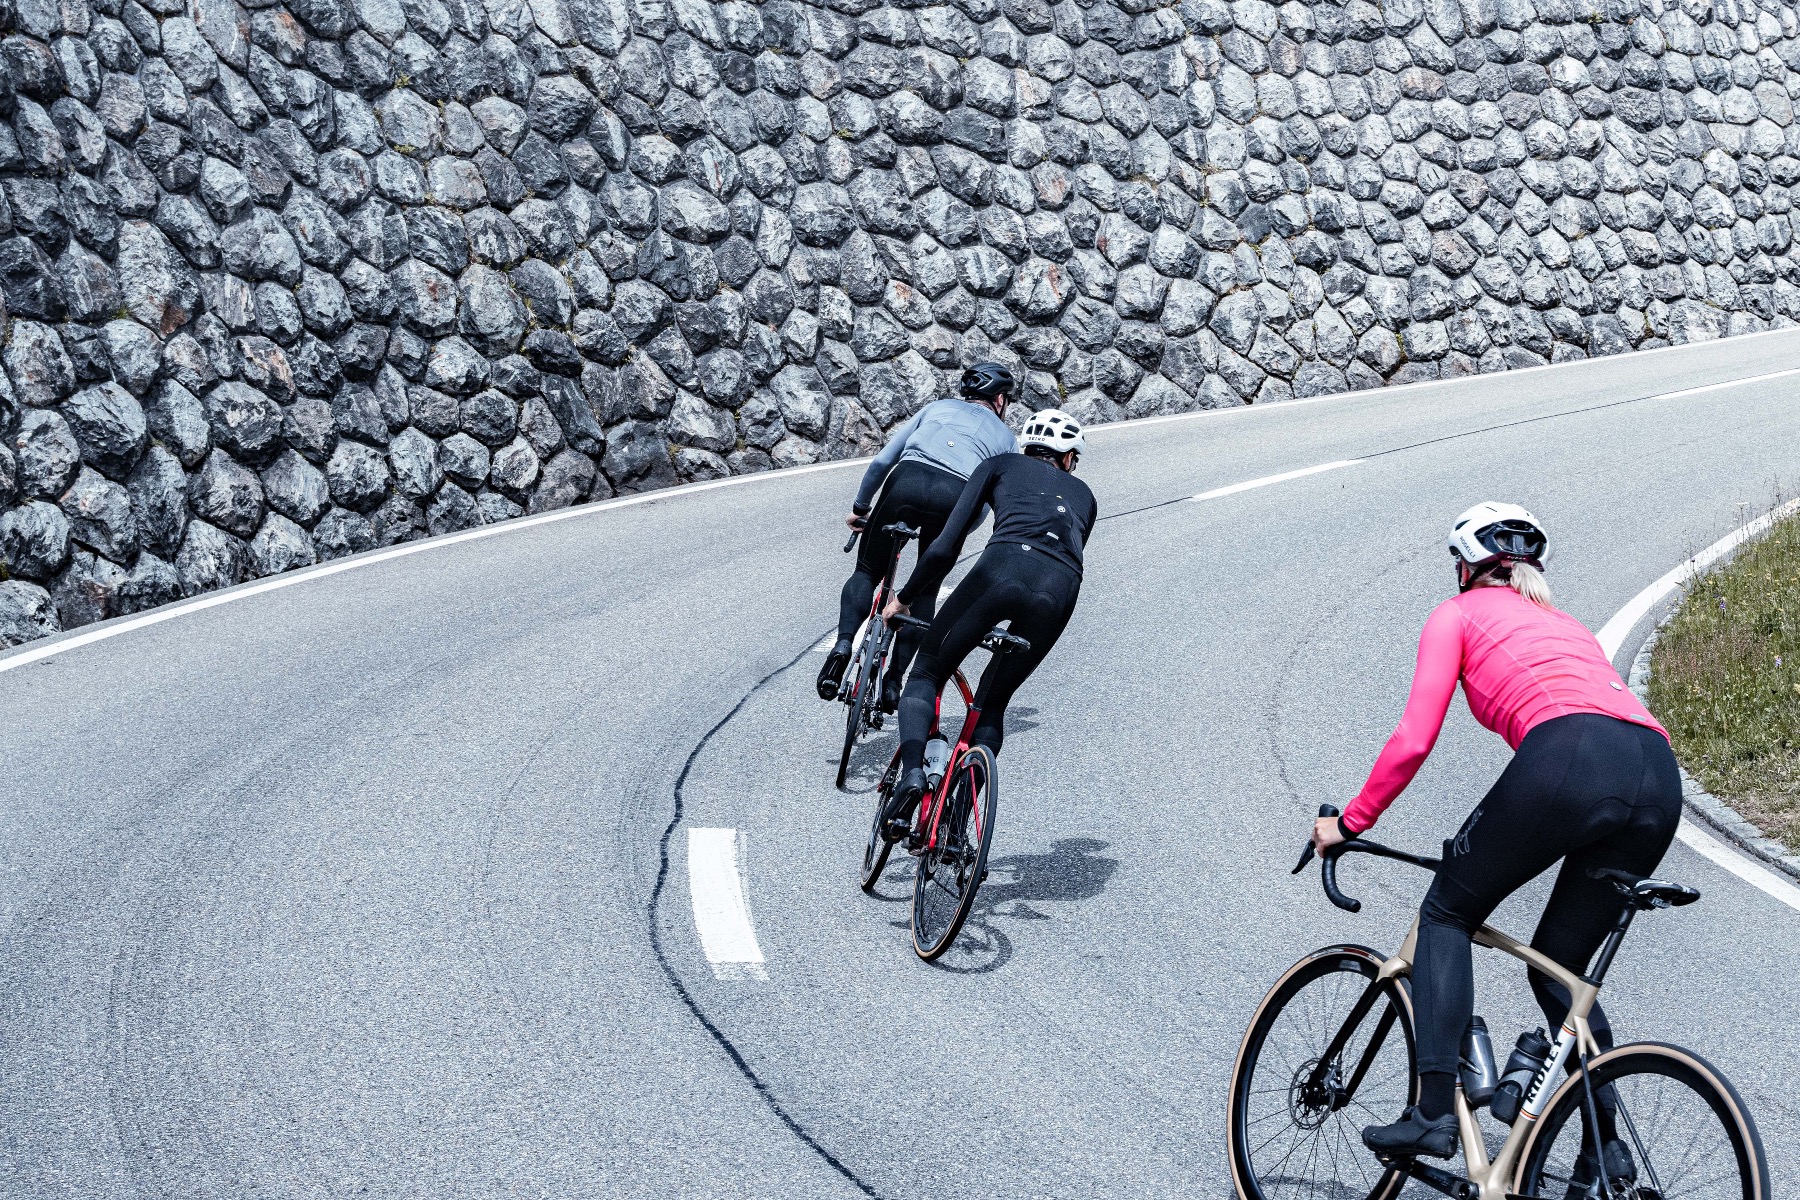 Groep fietsers werkt samen tijdens een steile klim. Rogelli fietskleding biedt ondersteuning en comfort.